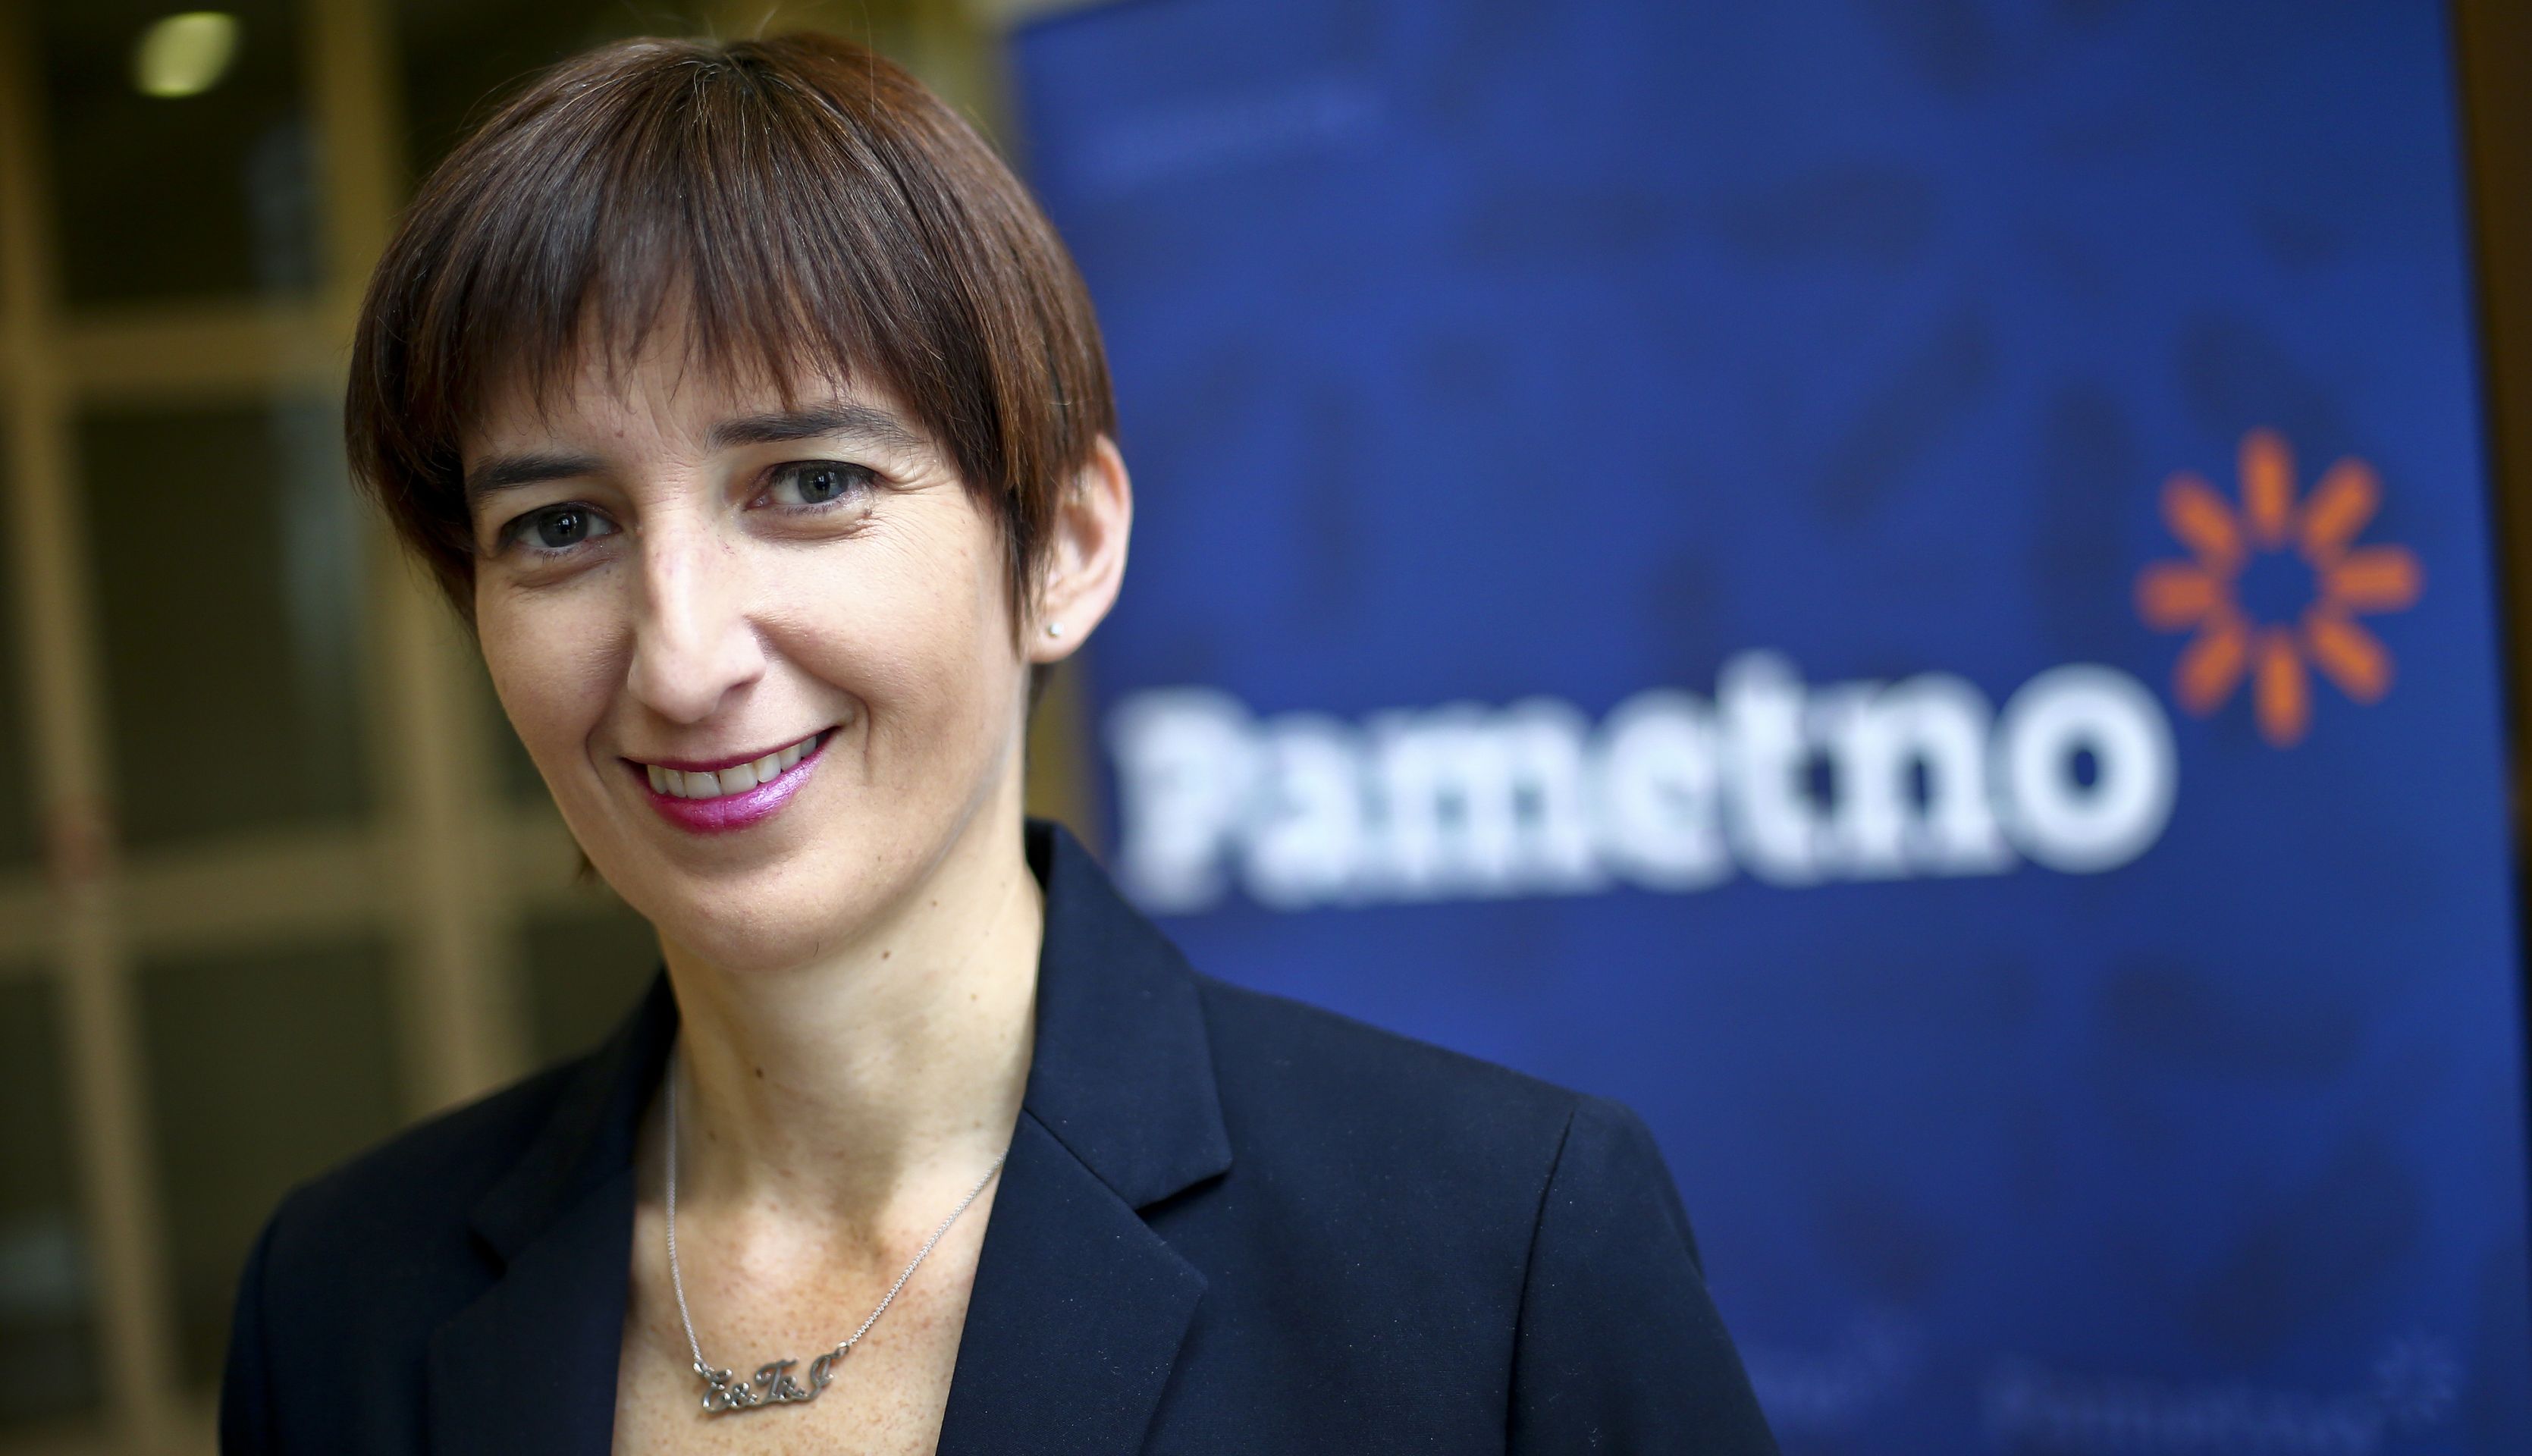 8.12.2016., Zagreb - Marijana Puljak, predsjednica politicke stranke Pametno.
Photo: Slavko Midzor/PIXSELL